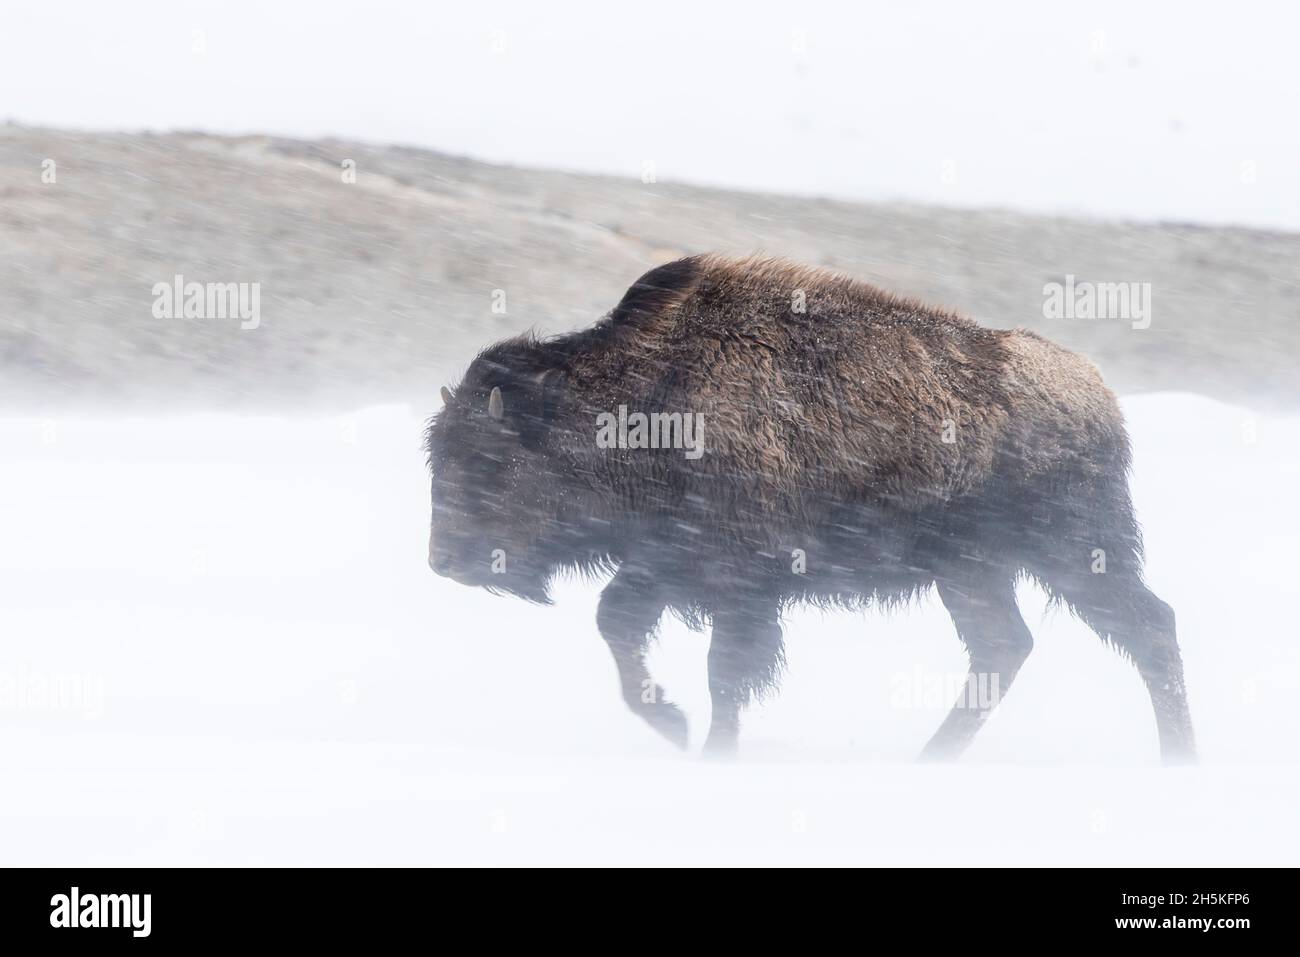 Une Bison (Bison bison) marchant contre la neige qui souffle dans un blizzard; Yellowstone National Park, États-Unis d'Amérique Banque D'Images